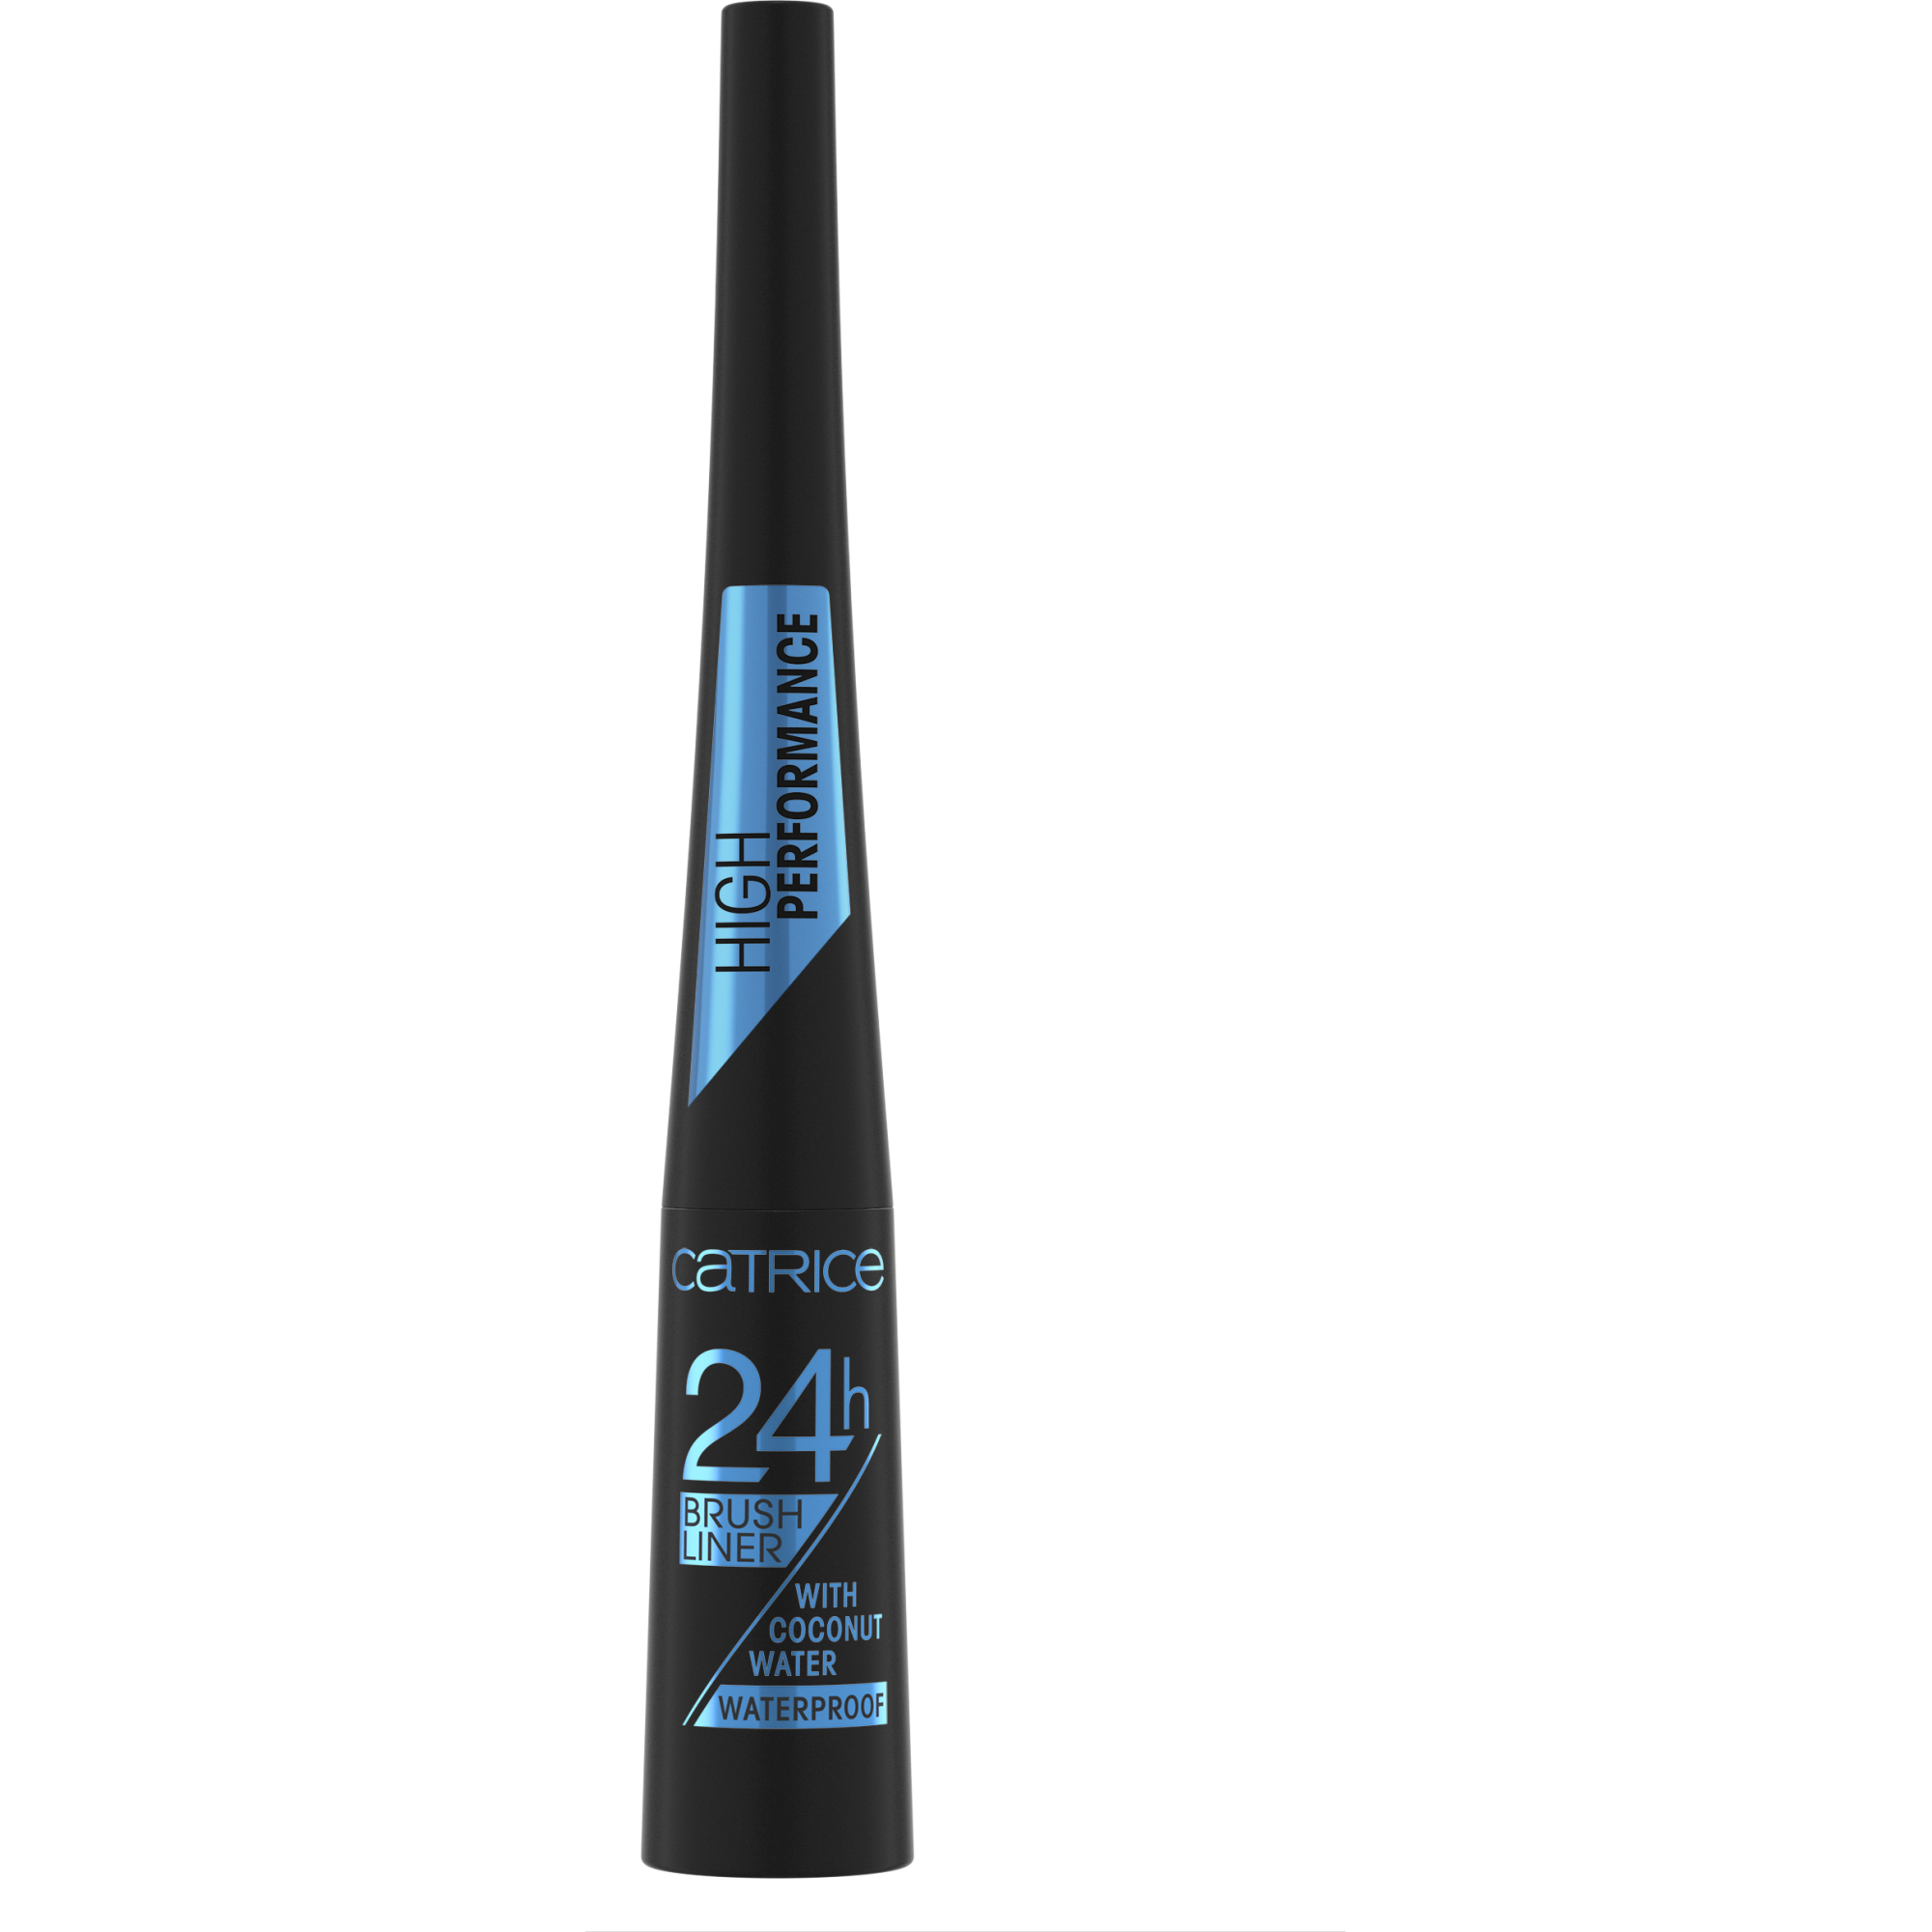 24h Brush Liner Waterproof eyeliner